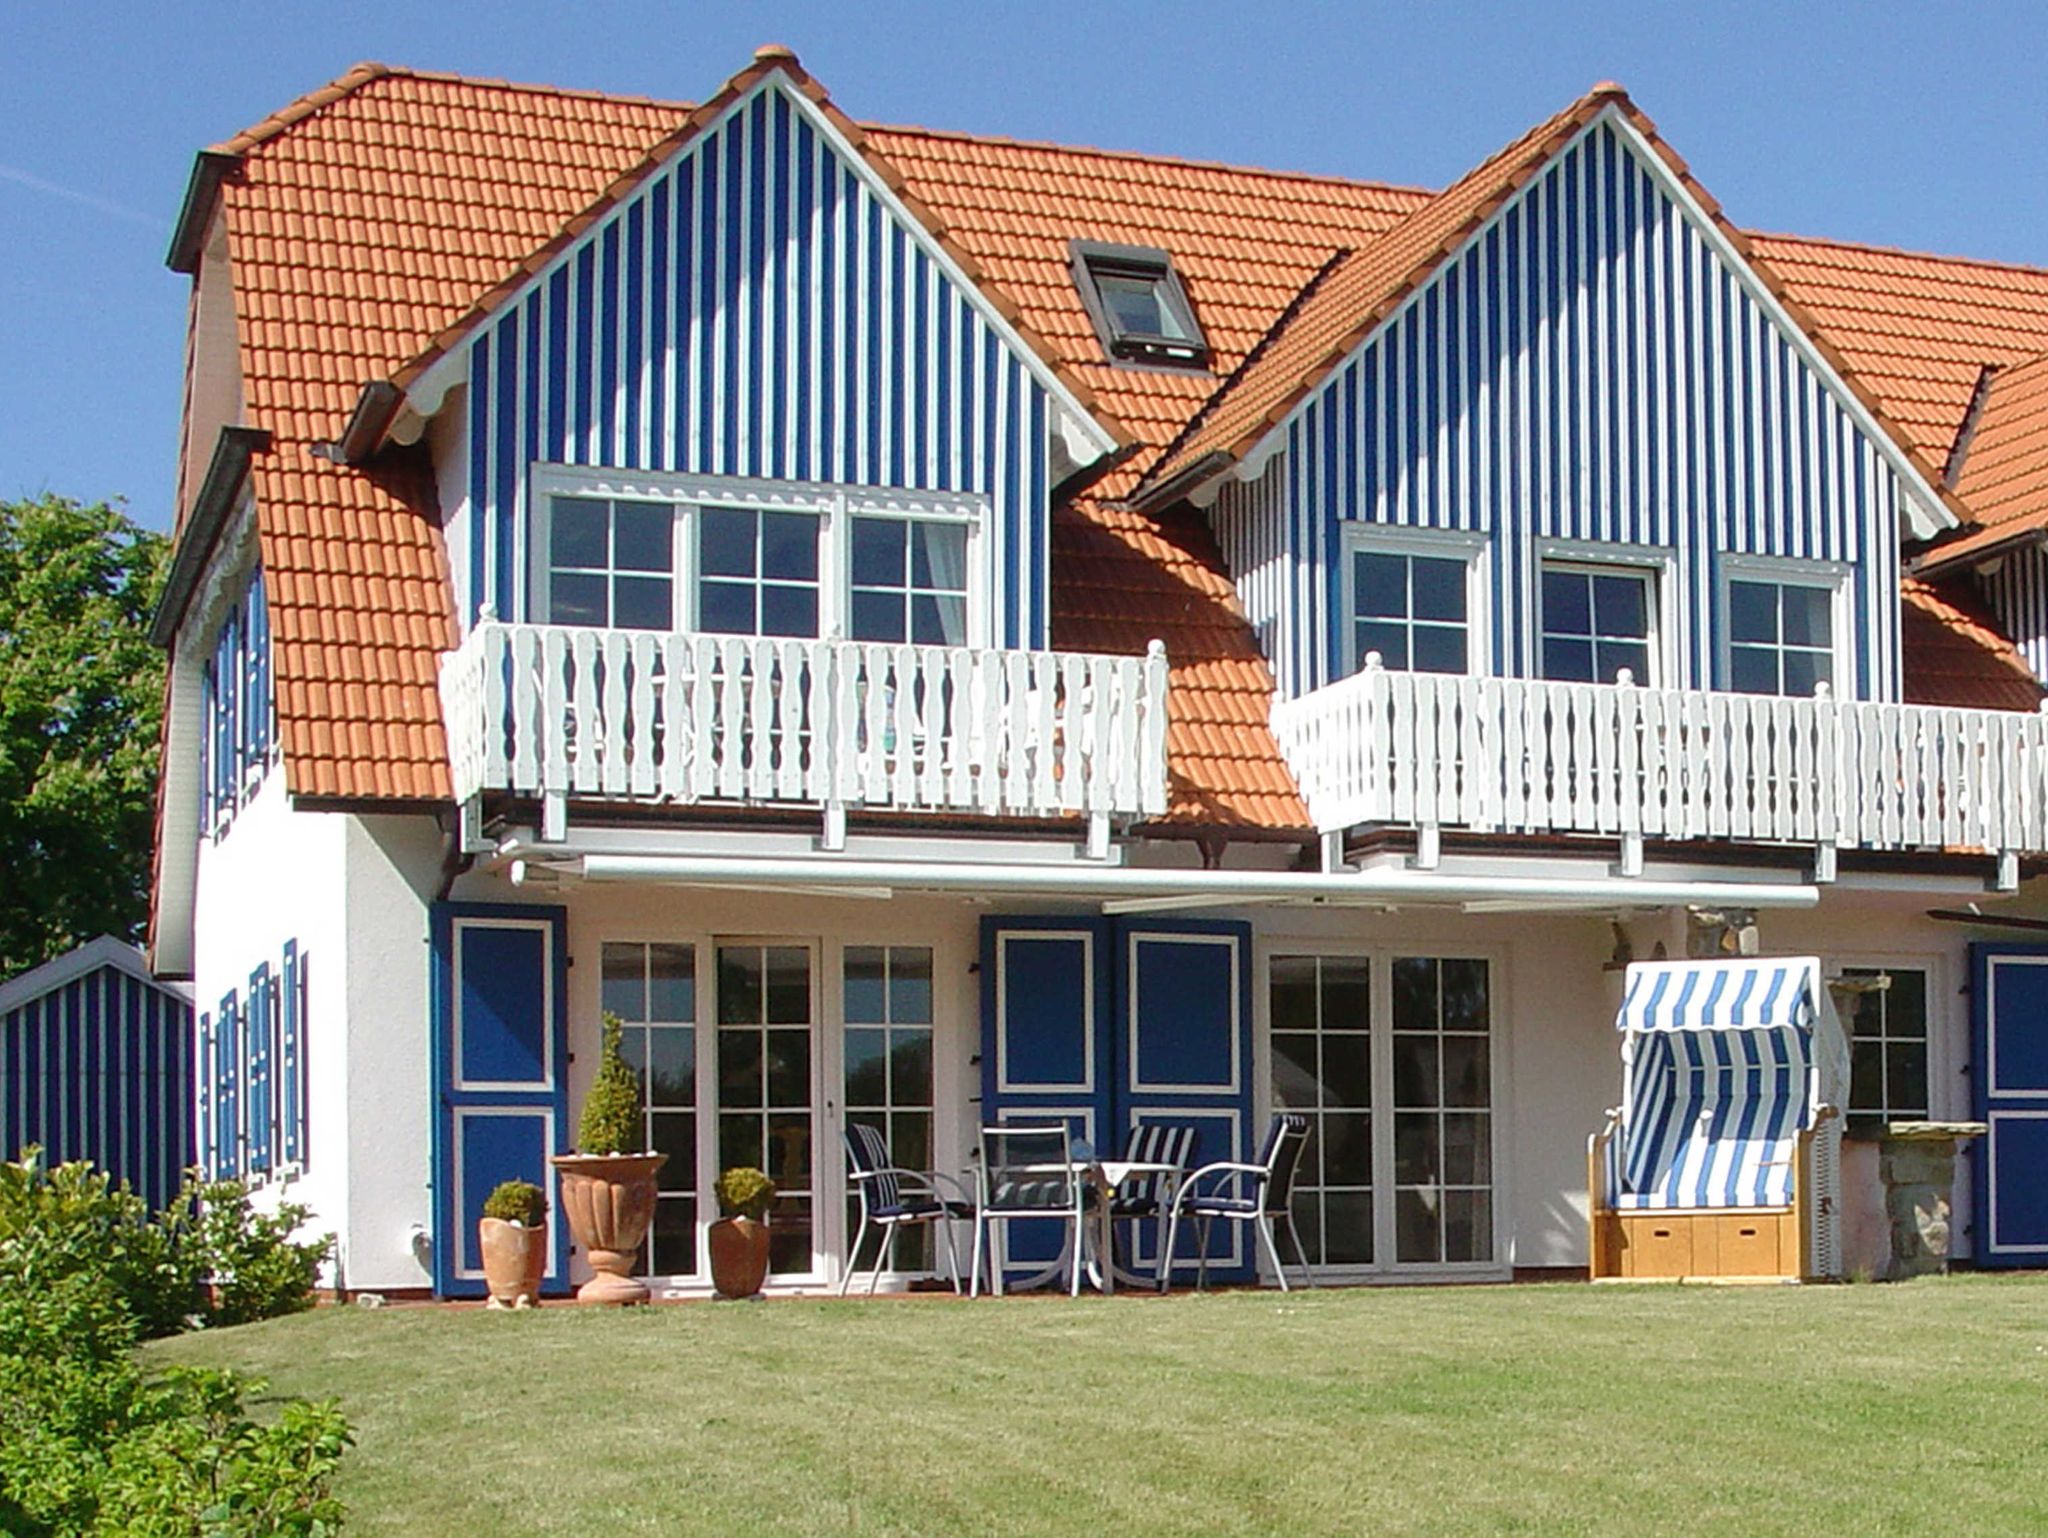 Mein Ostseeferienhaus - Bungalow / Ferienhaus an der Ostsee - Modernes Ferienhaus, 4 Personen, 2 Schlafzimmer, von privat